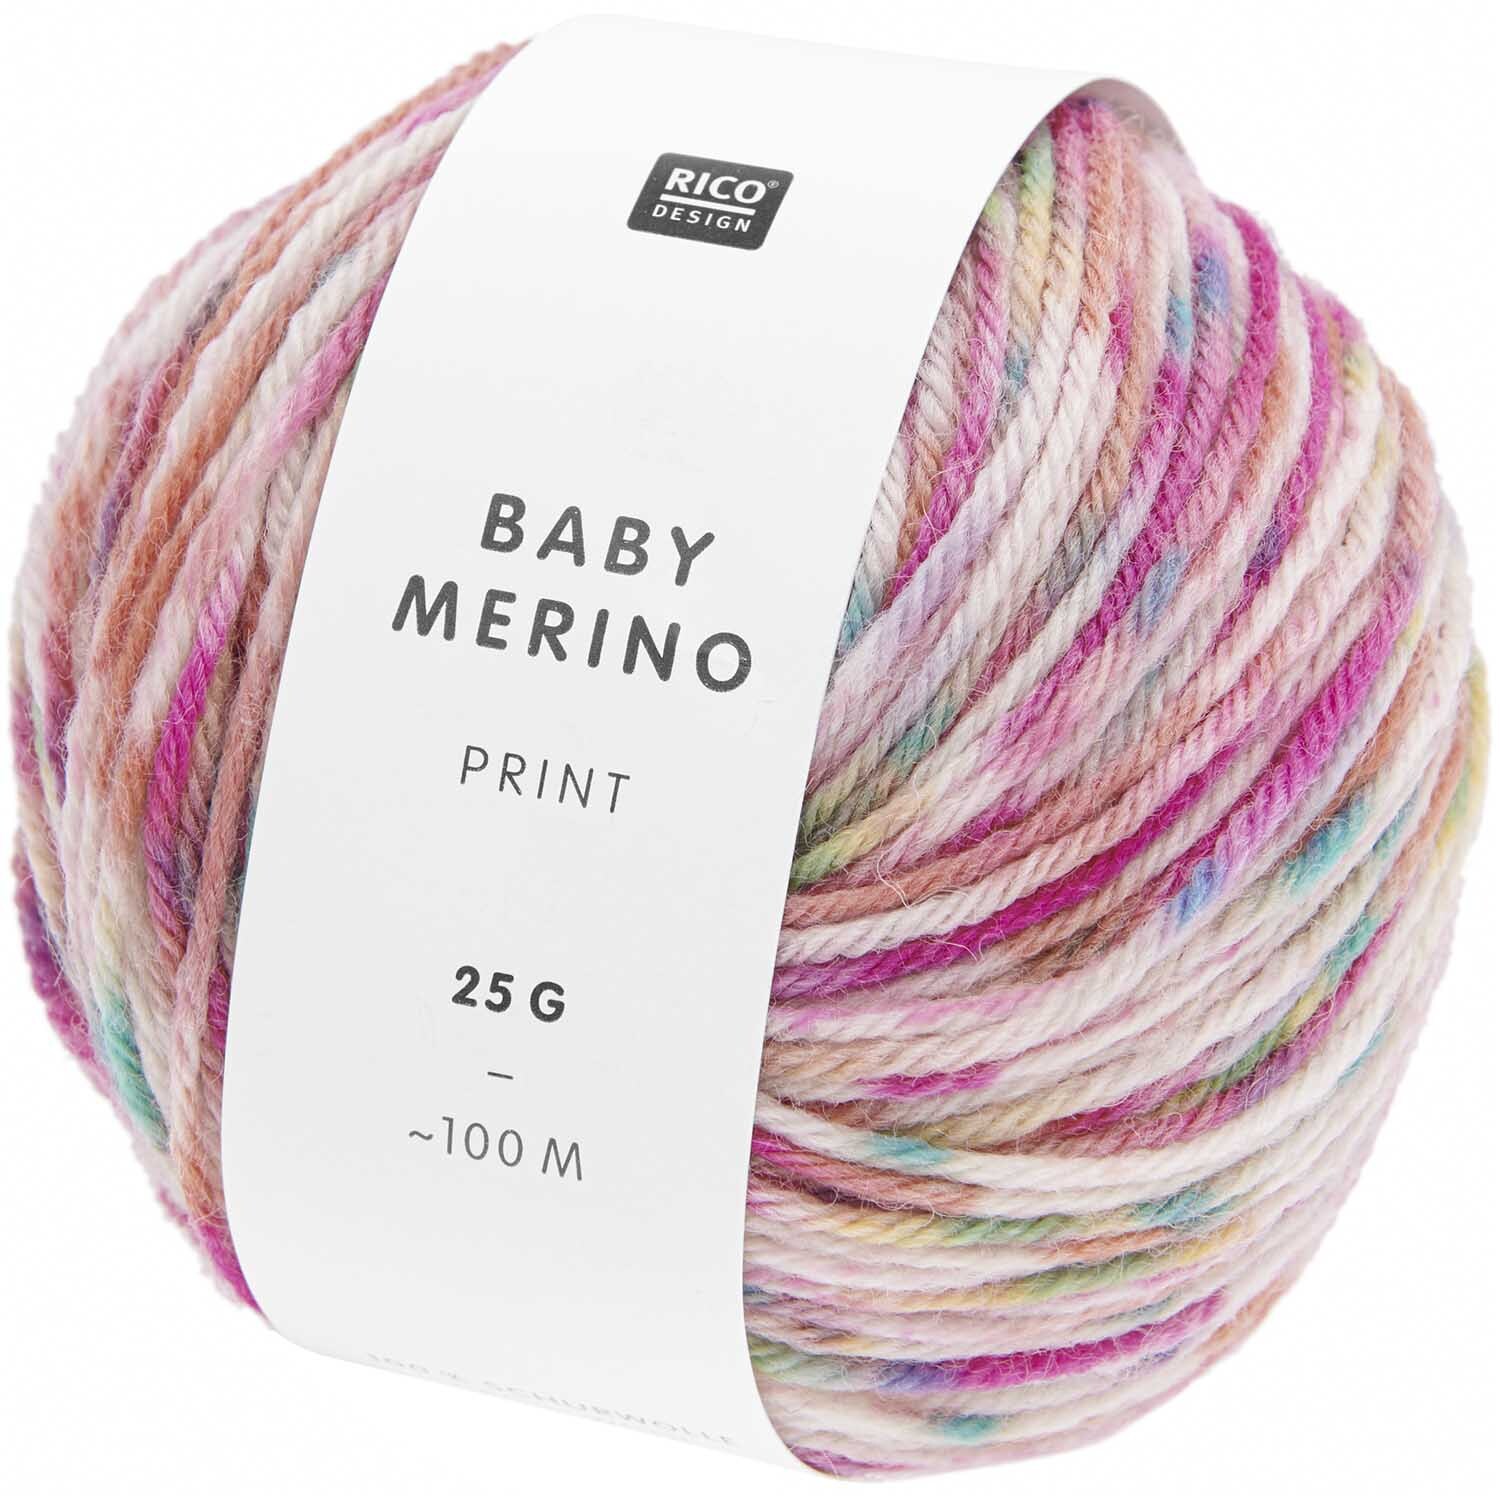 Baby Merino Print